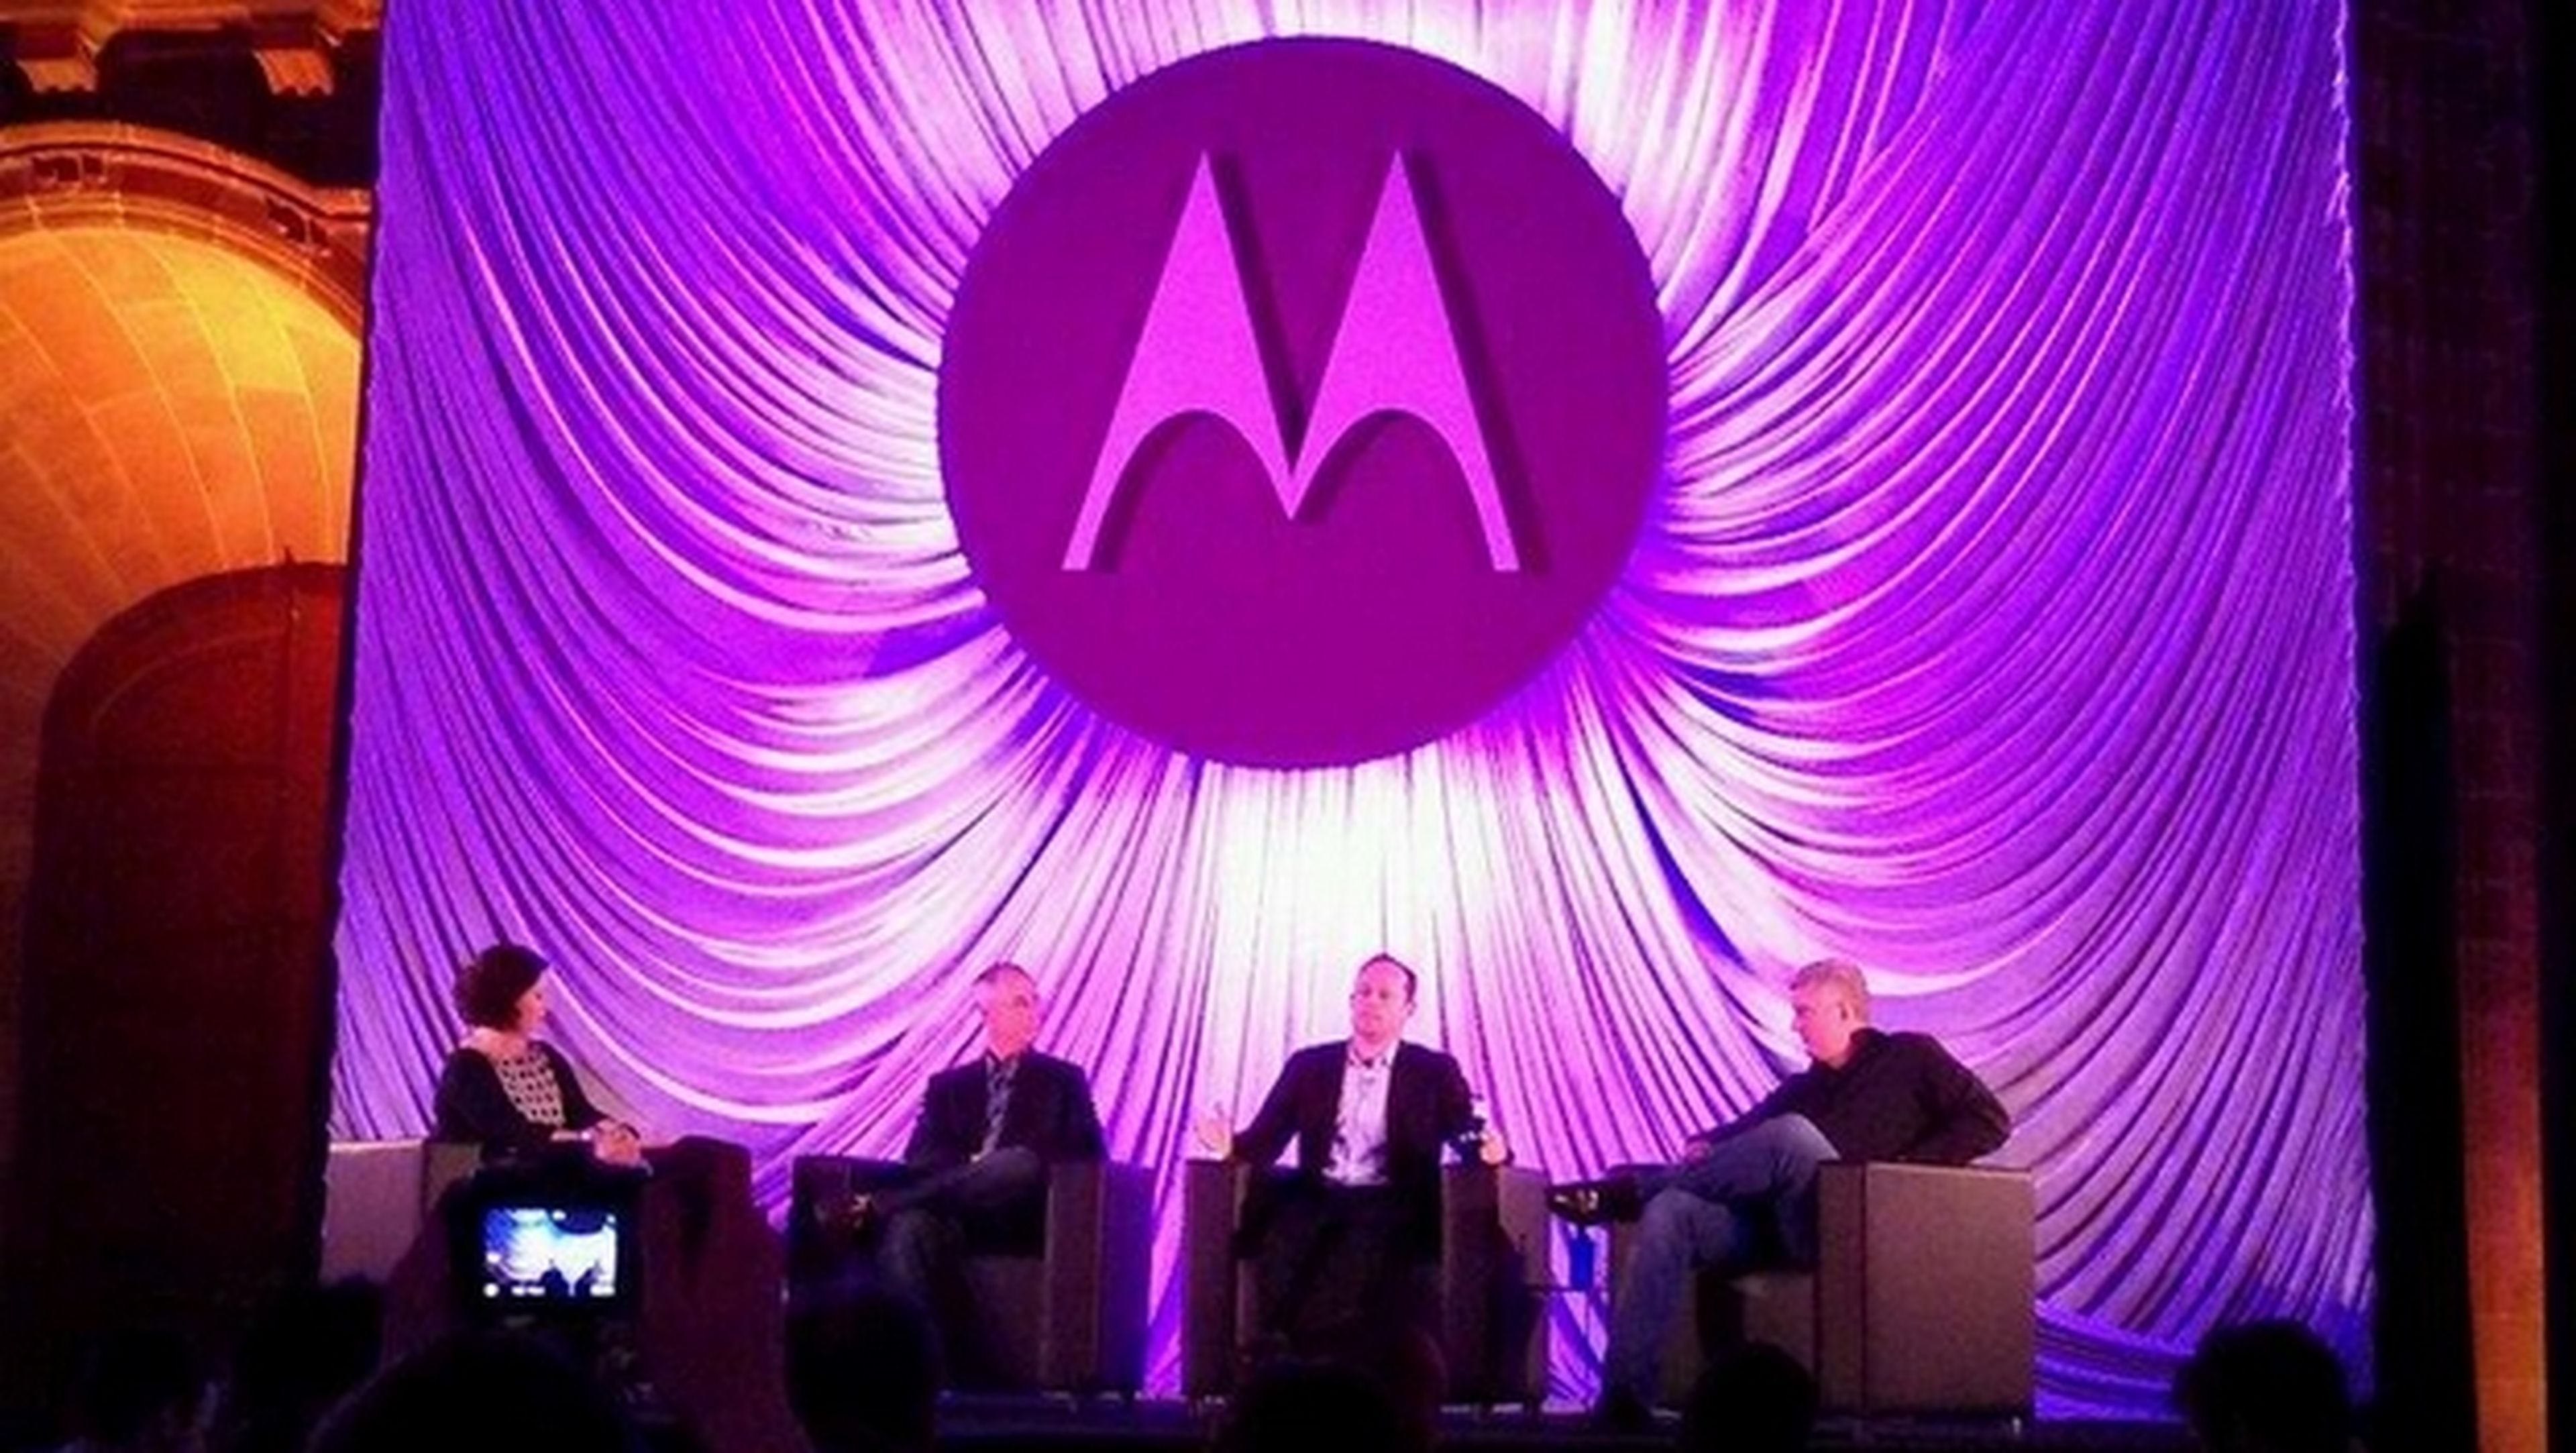 Sucesor del Moto X, Moto Maker en Europa, smartwatch en la presentaciÃ³n de Motorola en el MWC 2014